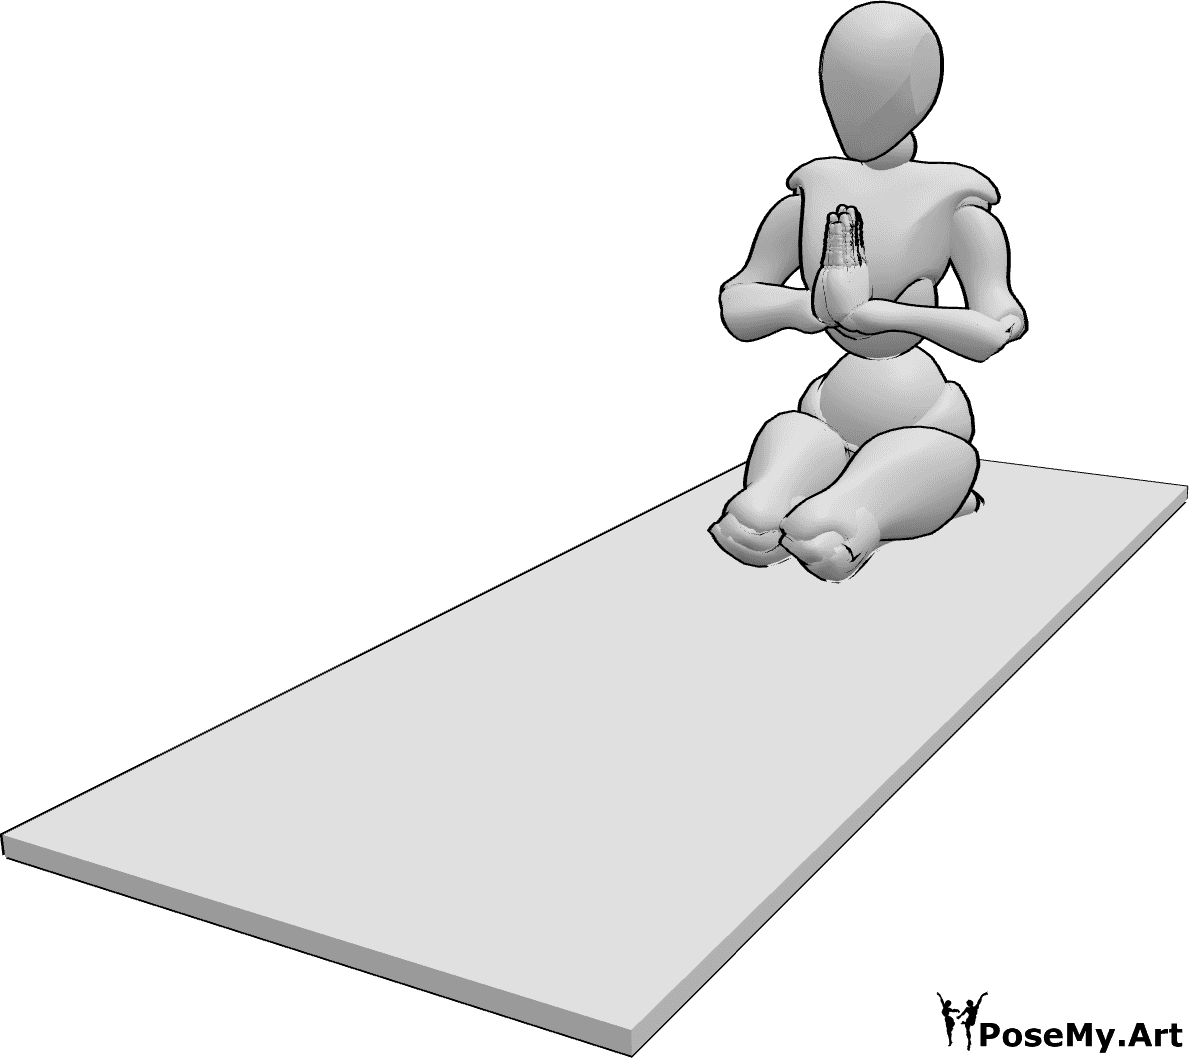 Référence des poses- Pose de yoga pour femme - La femme fait une pose de yoga